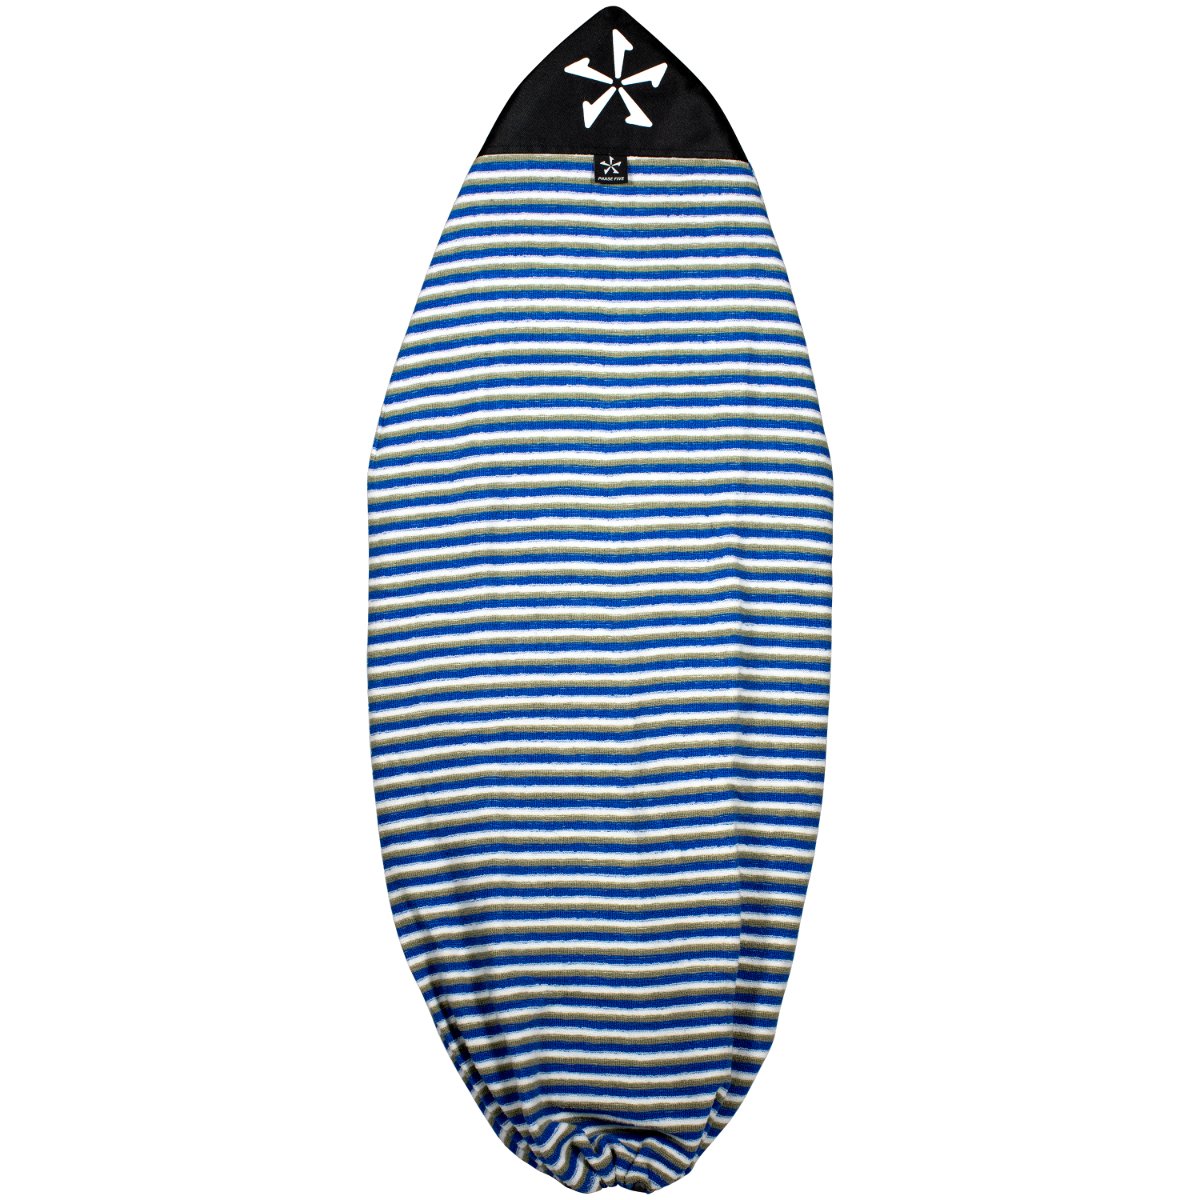 Phase 5 Wakesurf Board Sock in White/Blue - BoardCo